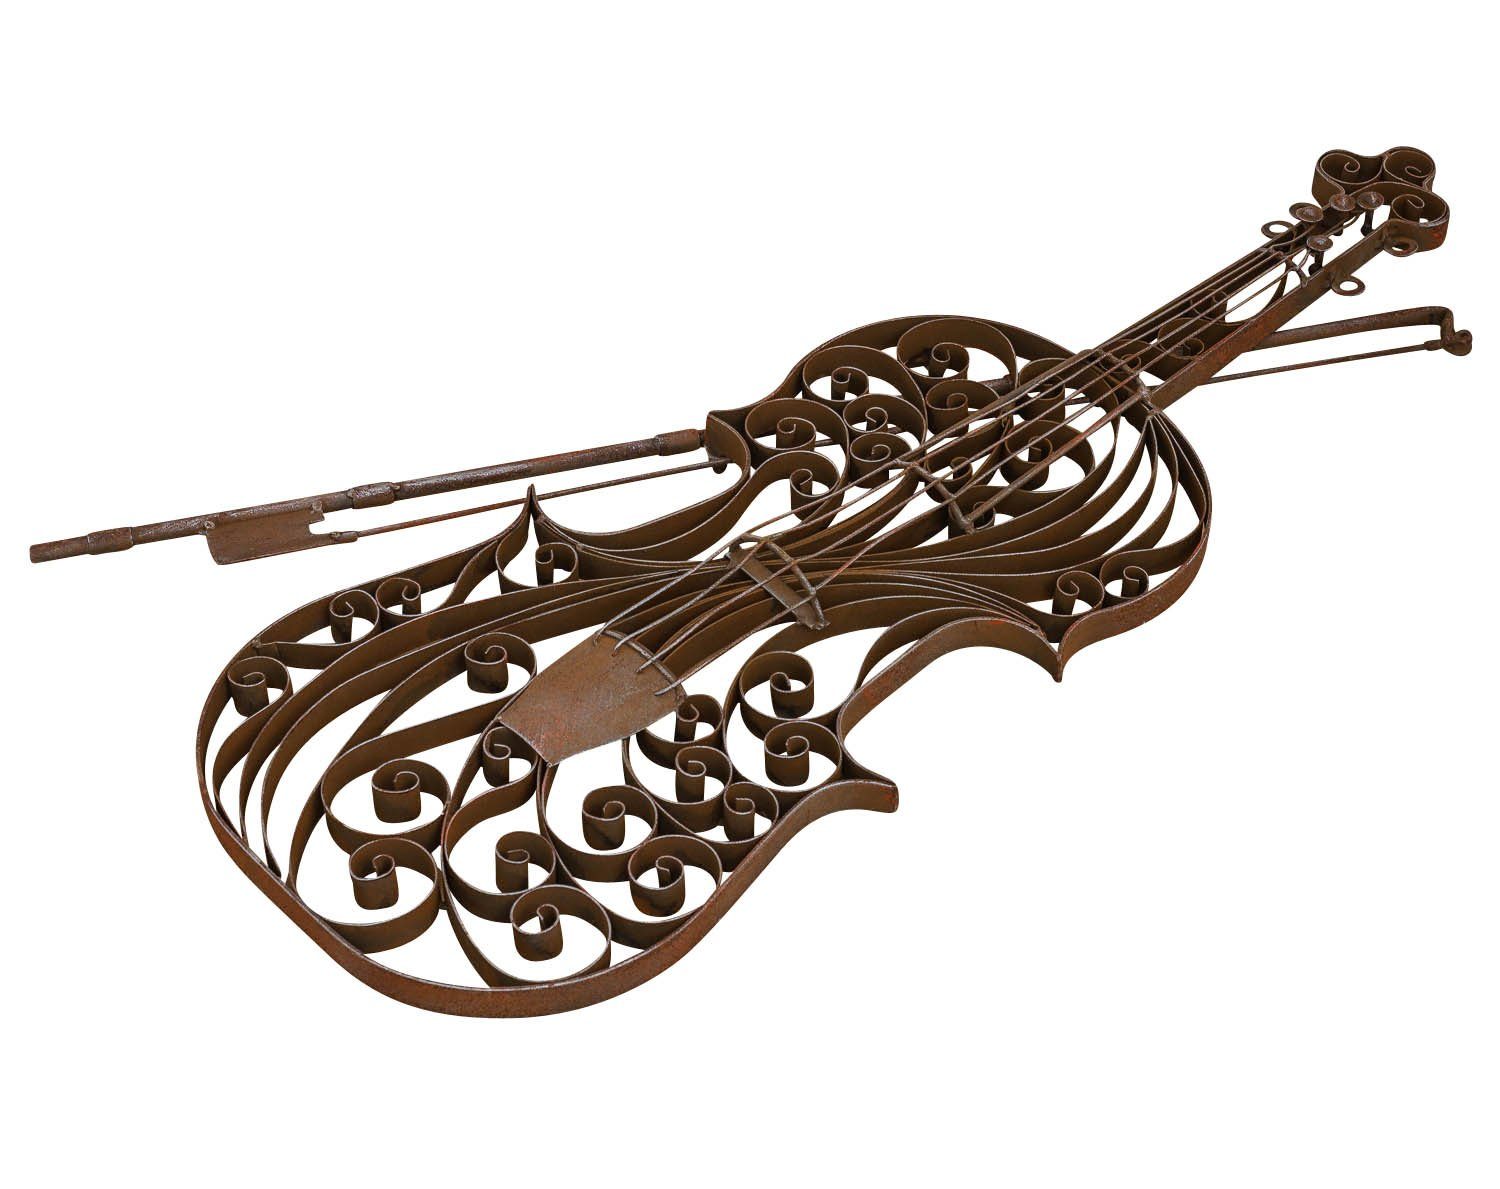 Garte Aubaho Instrument Modell Metall Violine Dekoration Wanddekoration Geige Gartenfigur